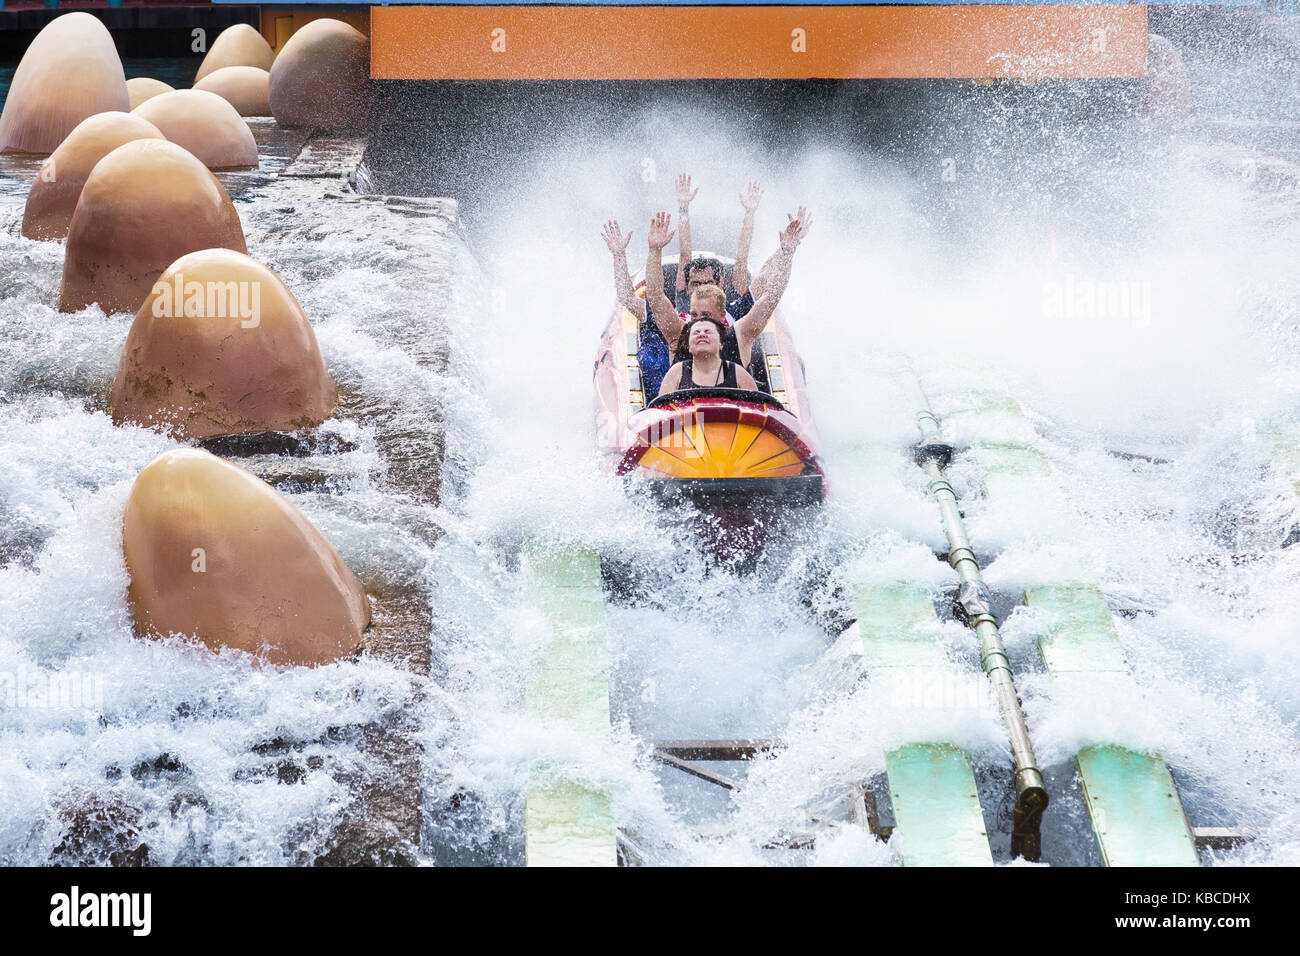 Los turistas disfrutando de la splash Mountain ride, del parque temático Universal Studios, en Orlando, Florida, EE.UU. Foto de stock